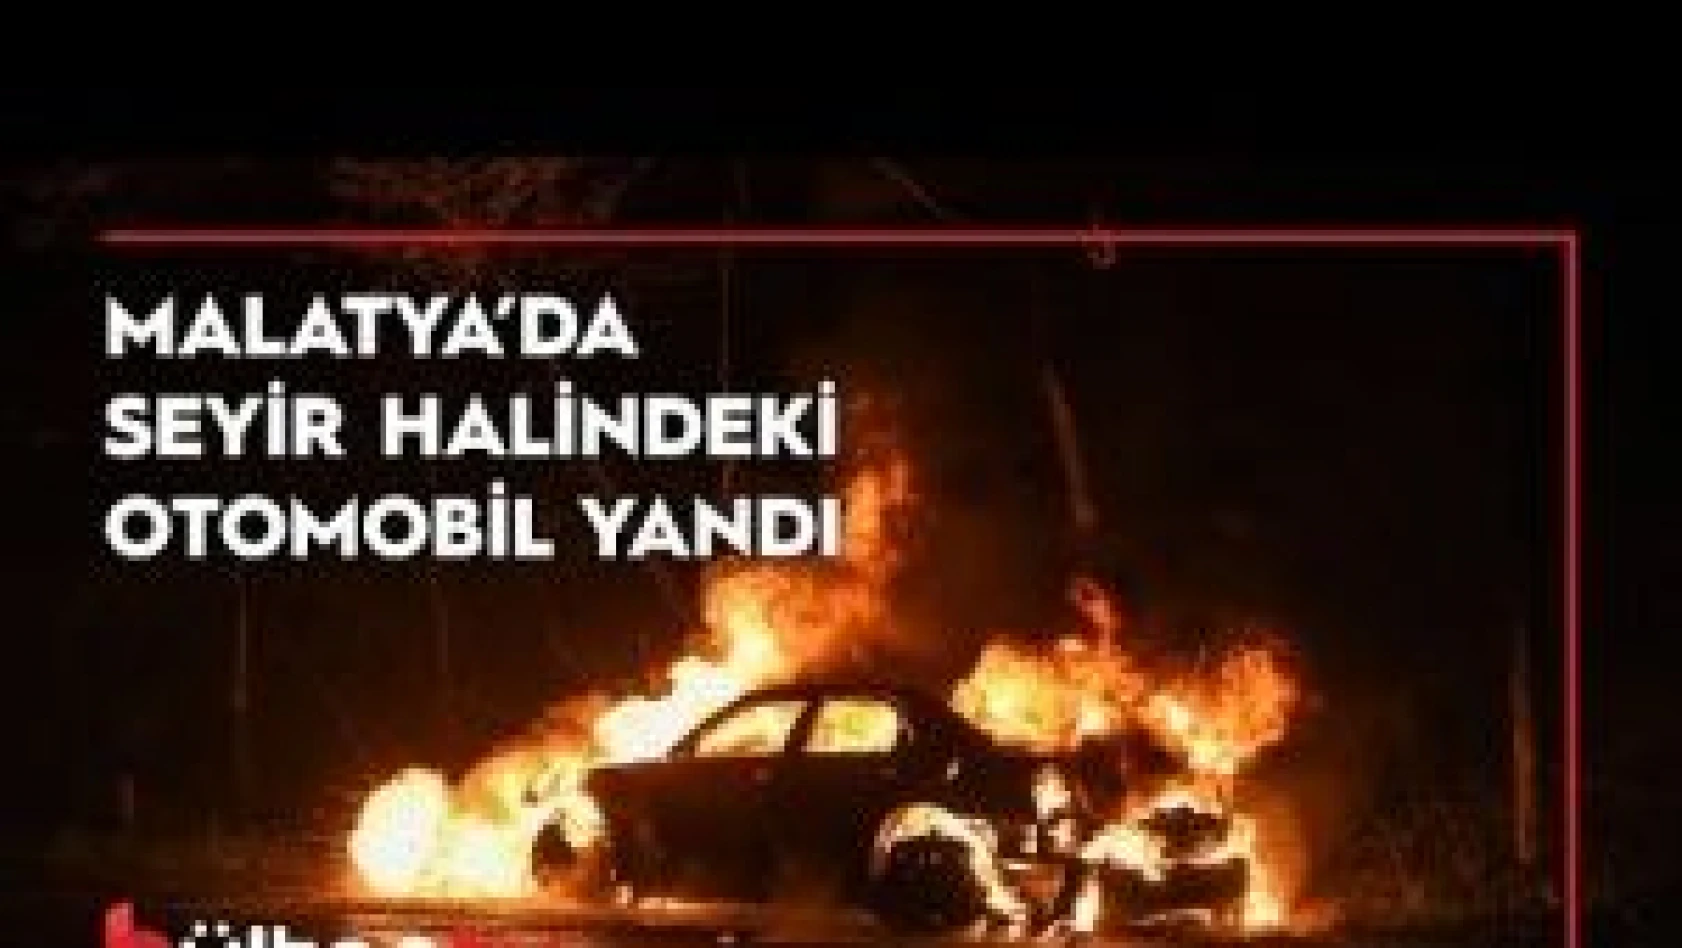 Malatya'da Seyir halindeki otomobil yandı